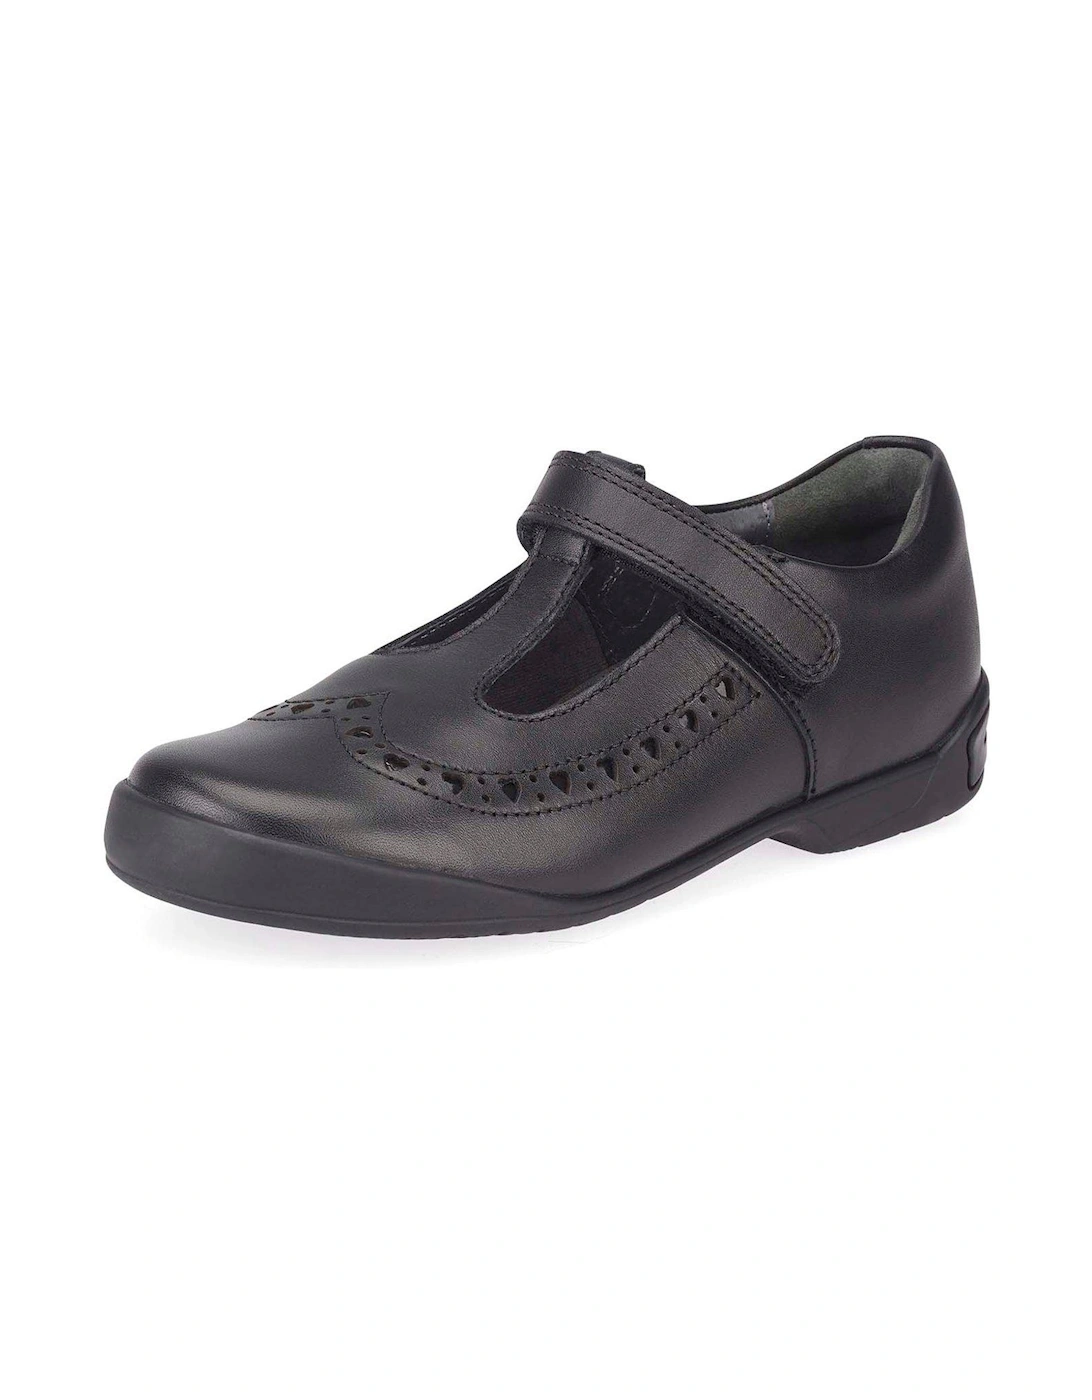 Leapfrog T-Bar Riptape Heart Girls School Shoes - Black Leather, 2 of 1